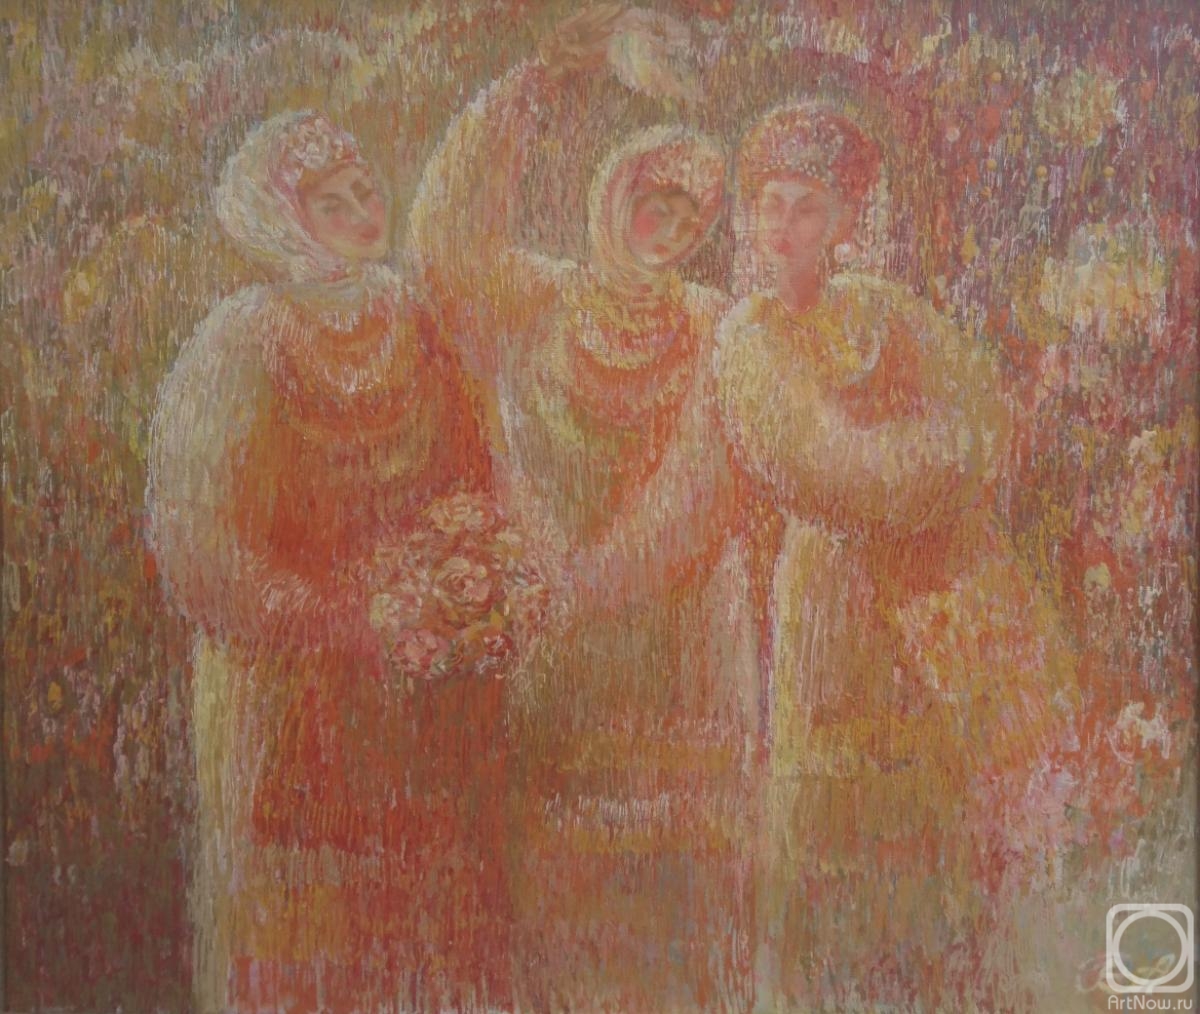 Qorlanov Vladimir. Three girls